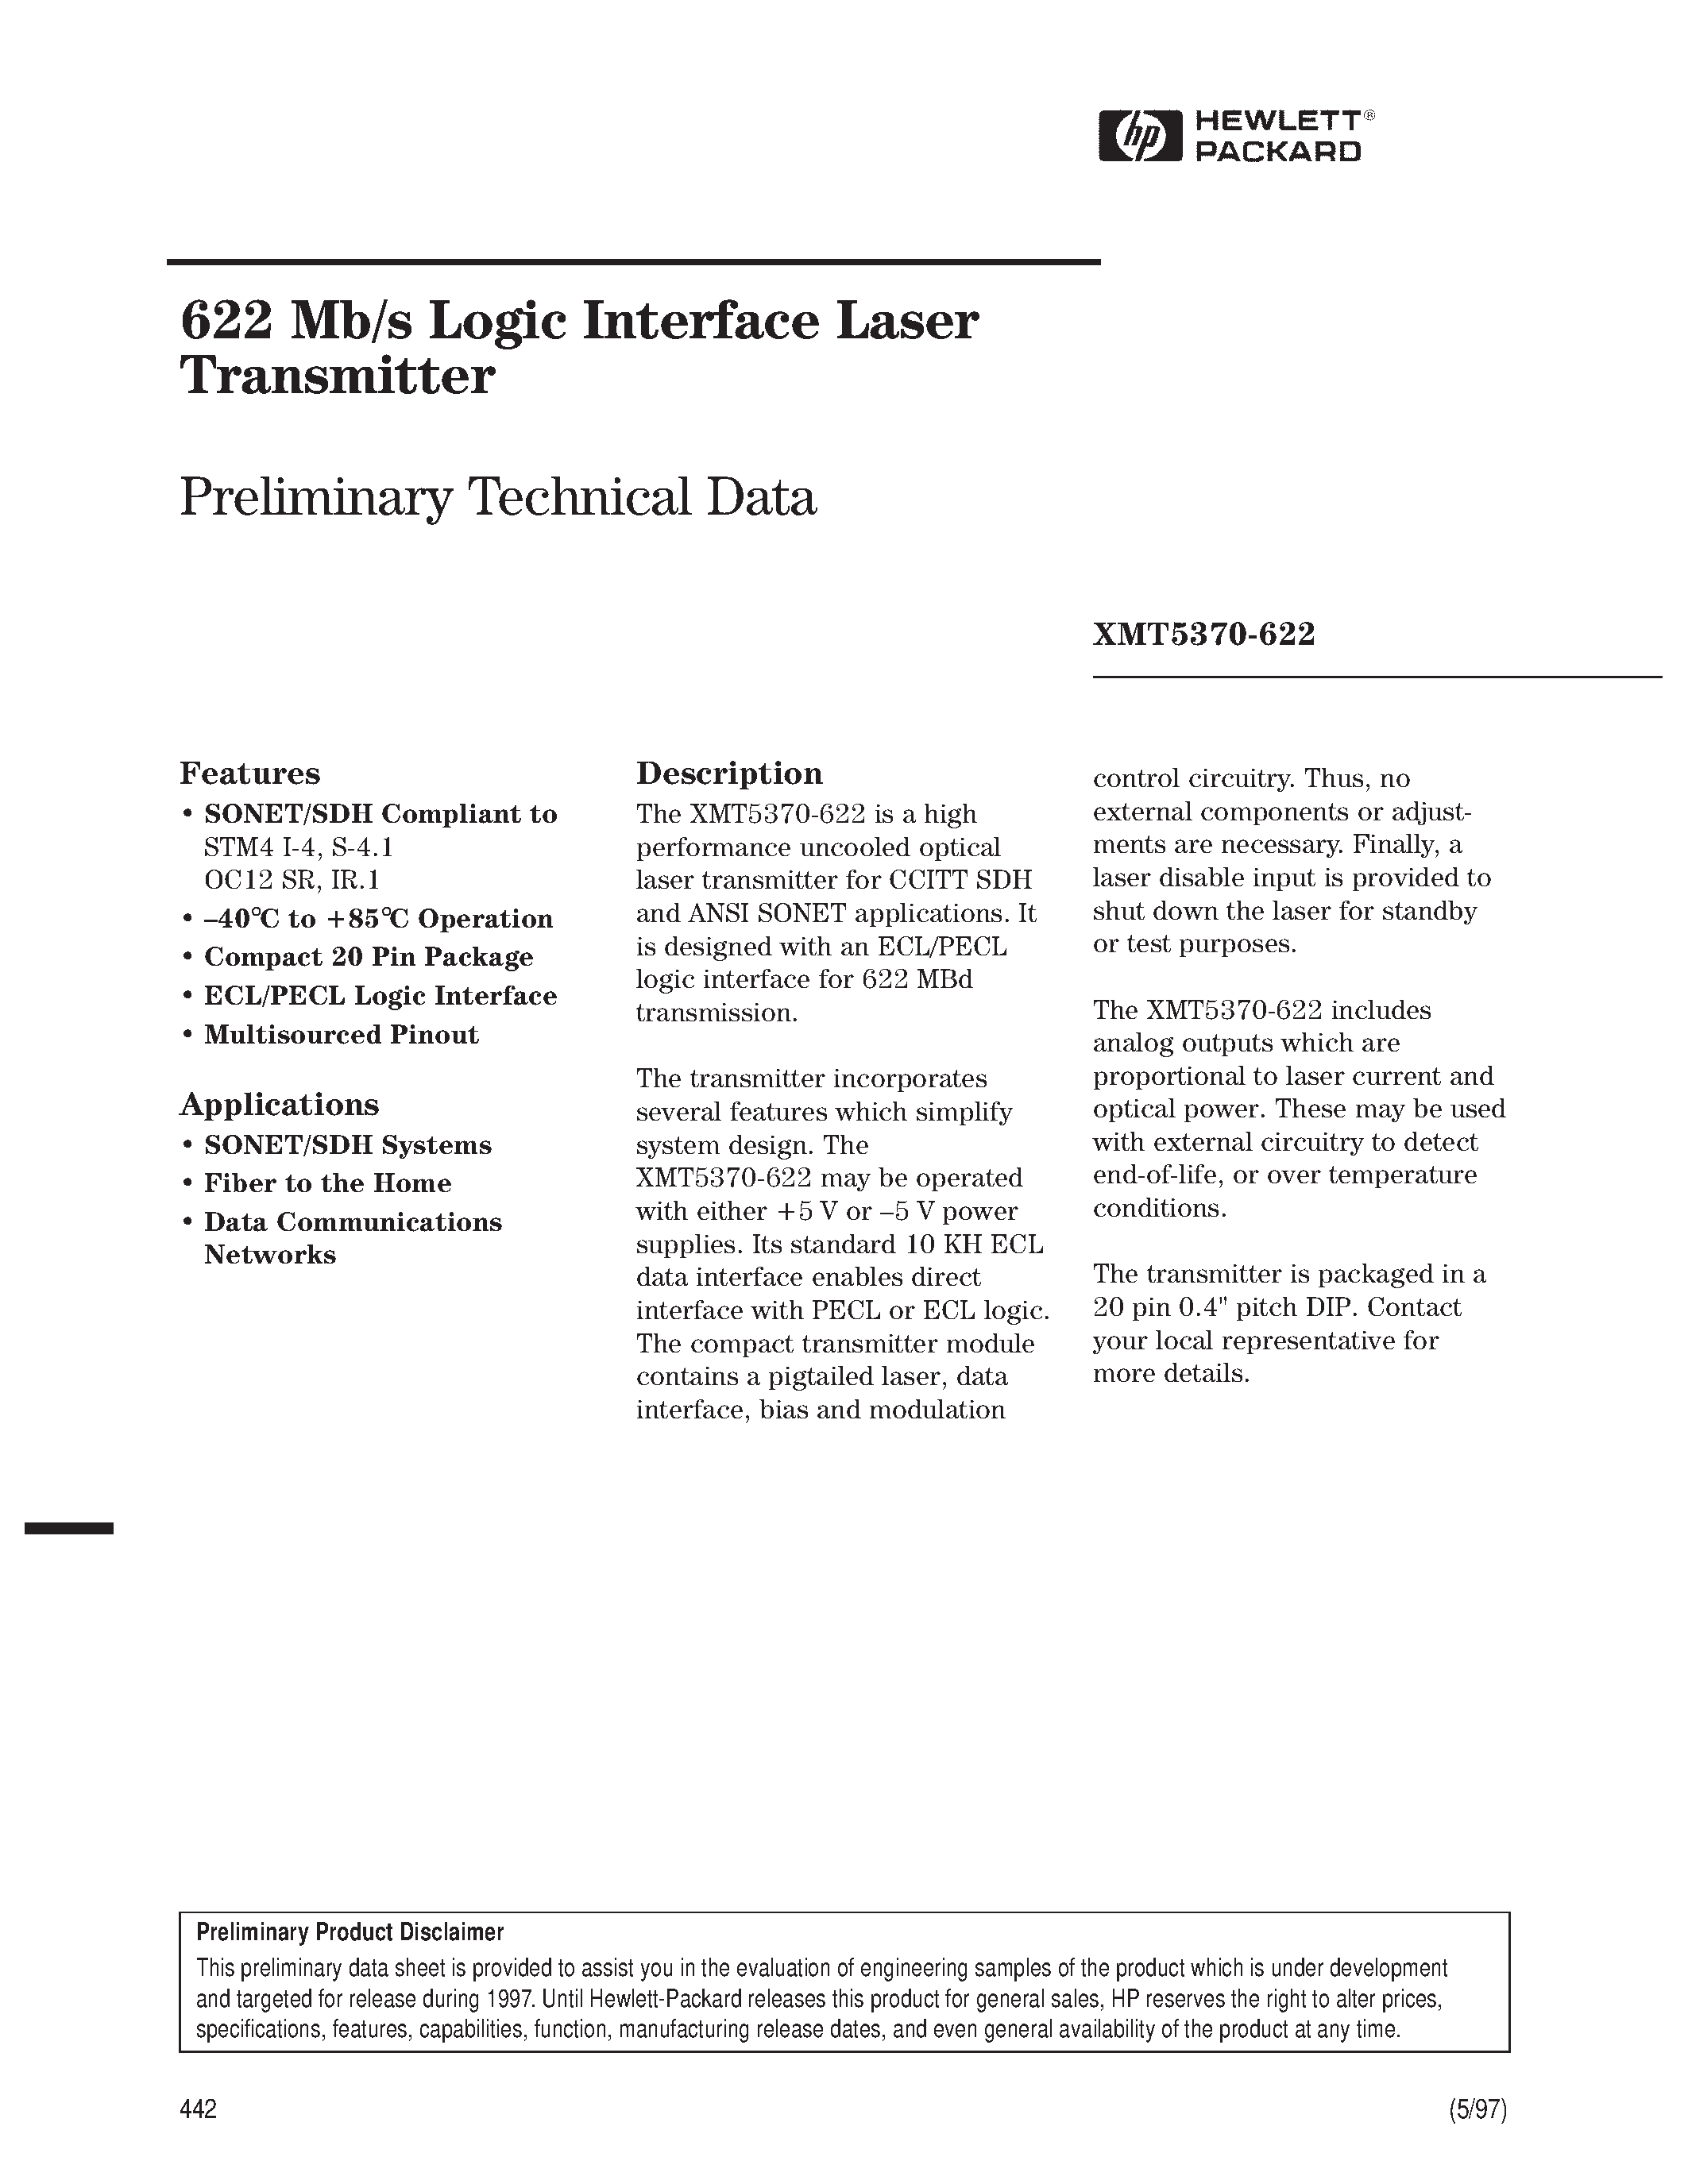 Datasheet XMT5360A-155-FP - 622 Mb/s Logic Interface Laser Transmitter page 1